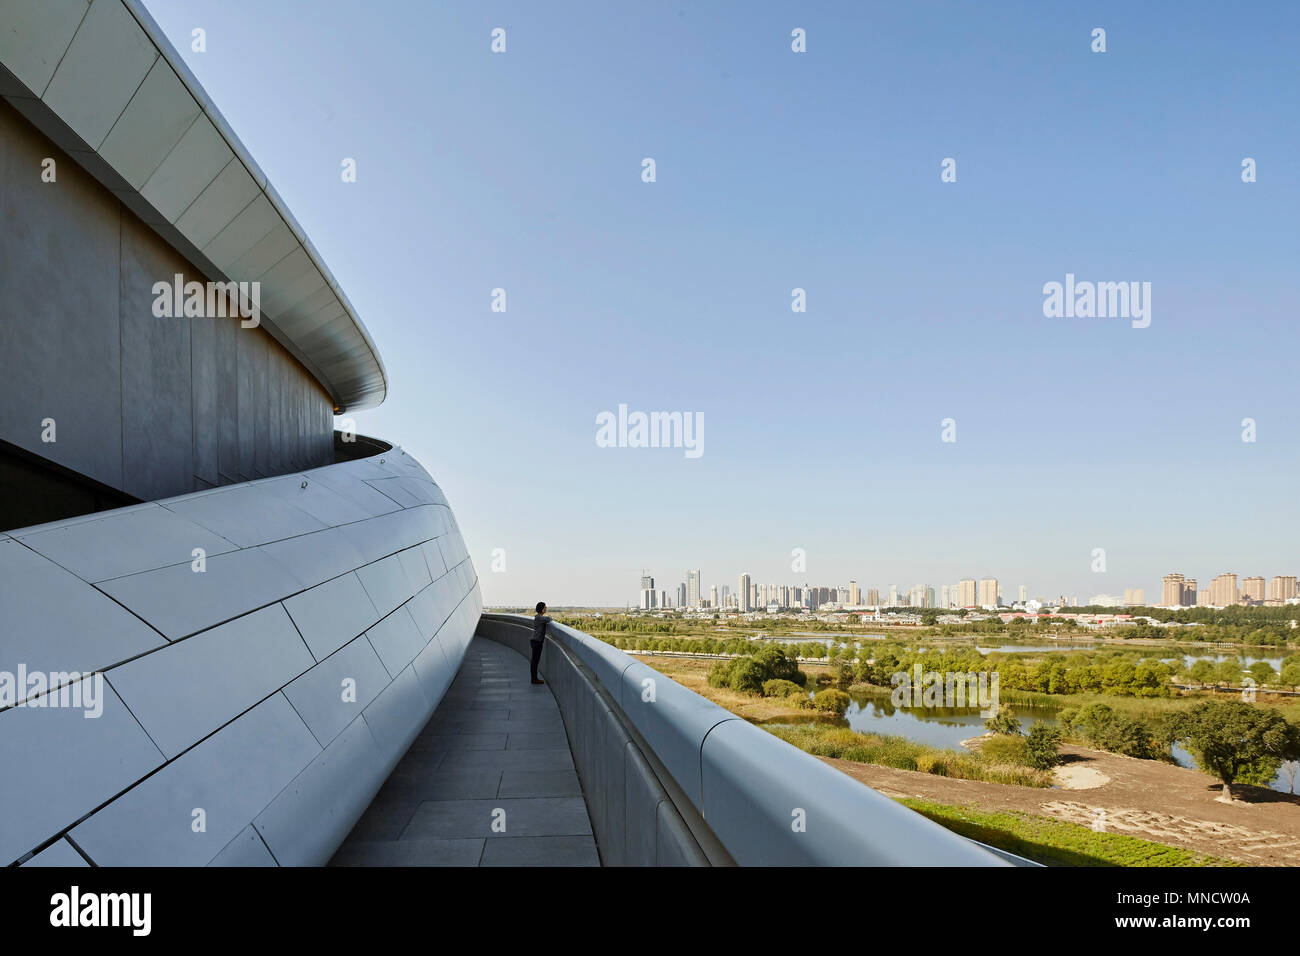 Erhöhte Ansicht von der Rampe, über Feuchtgebiete auf die Skyline der Stadt. Harbin Opernhaus, Harbin, China. Architekt: MAD, 2015. Stockfoto